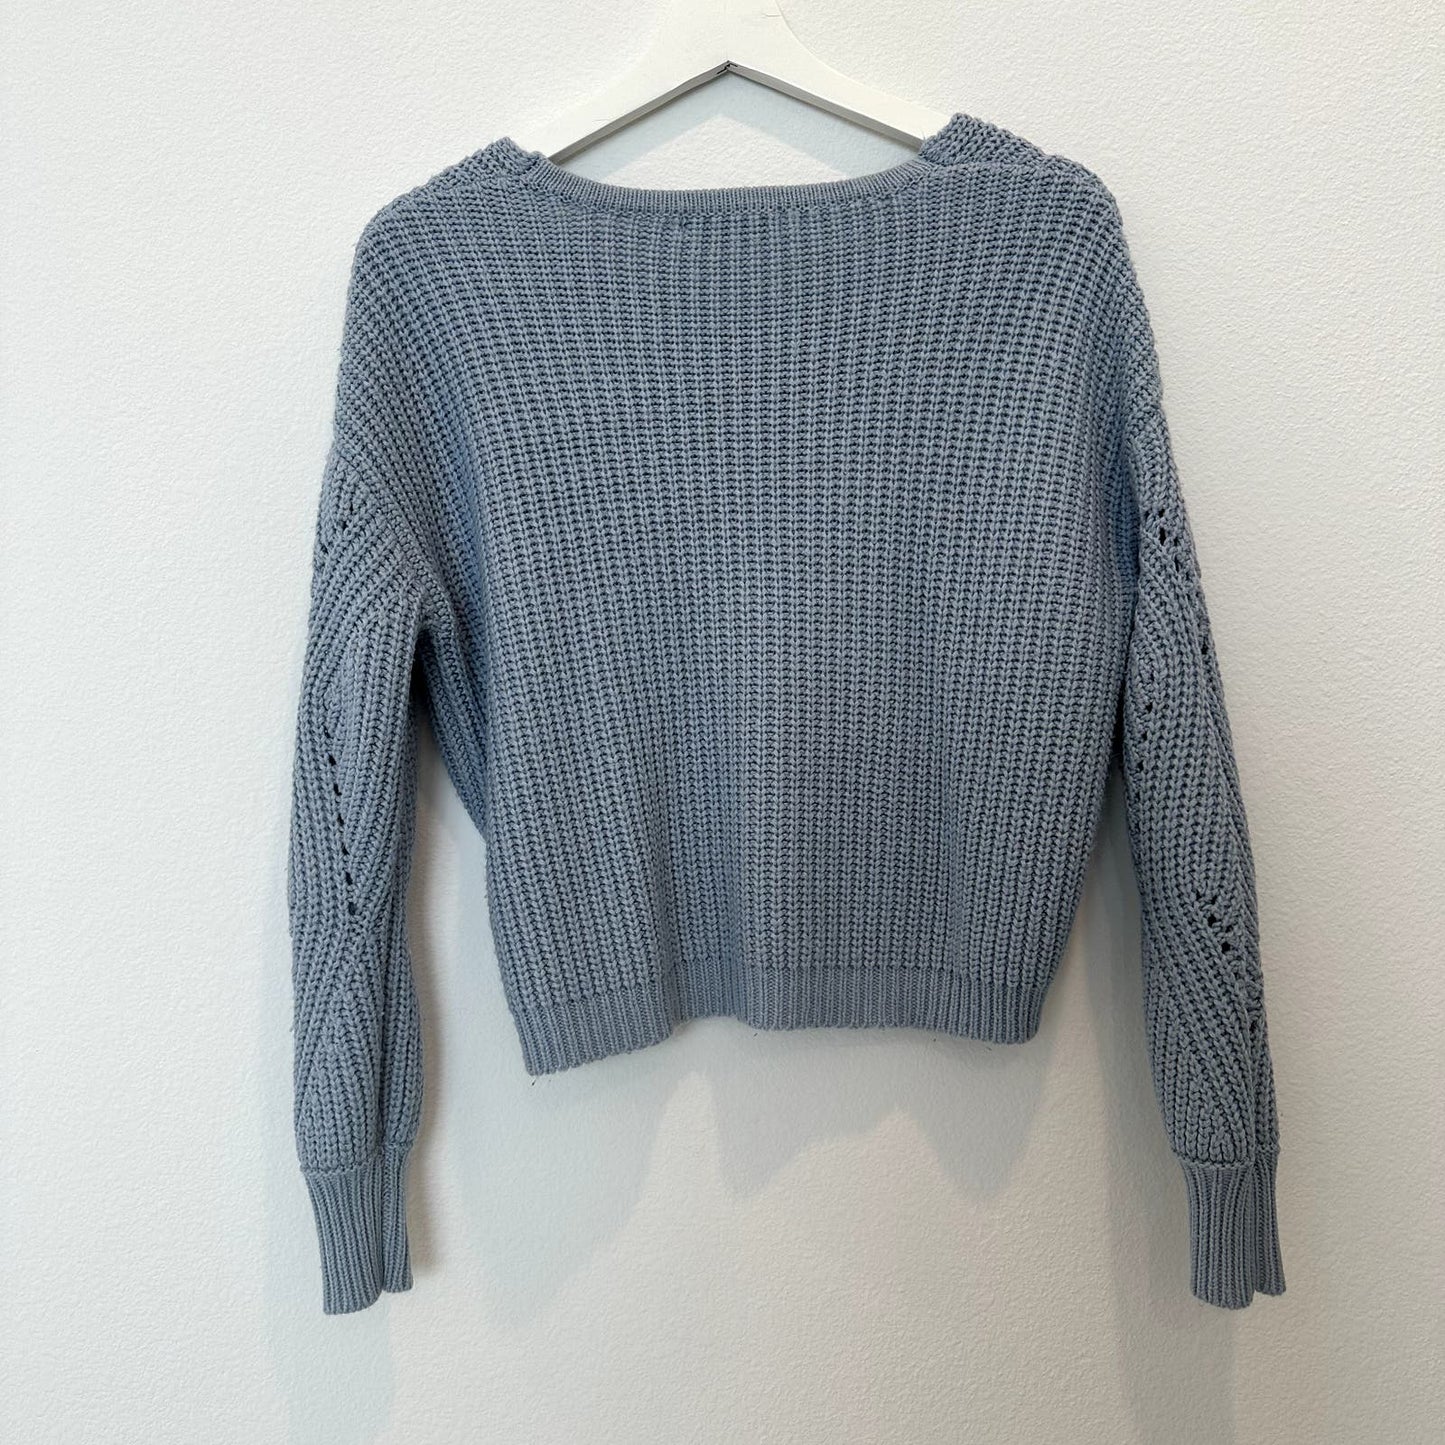 Light blue cutout v-neck knit sweater